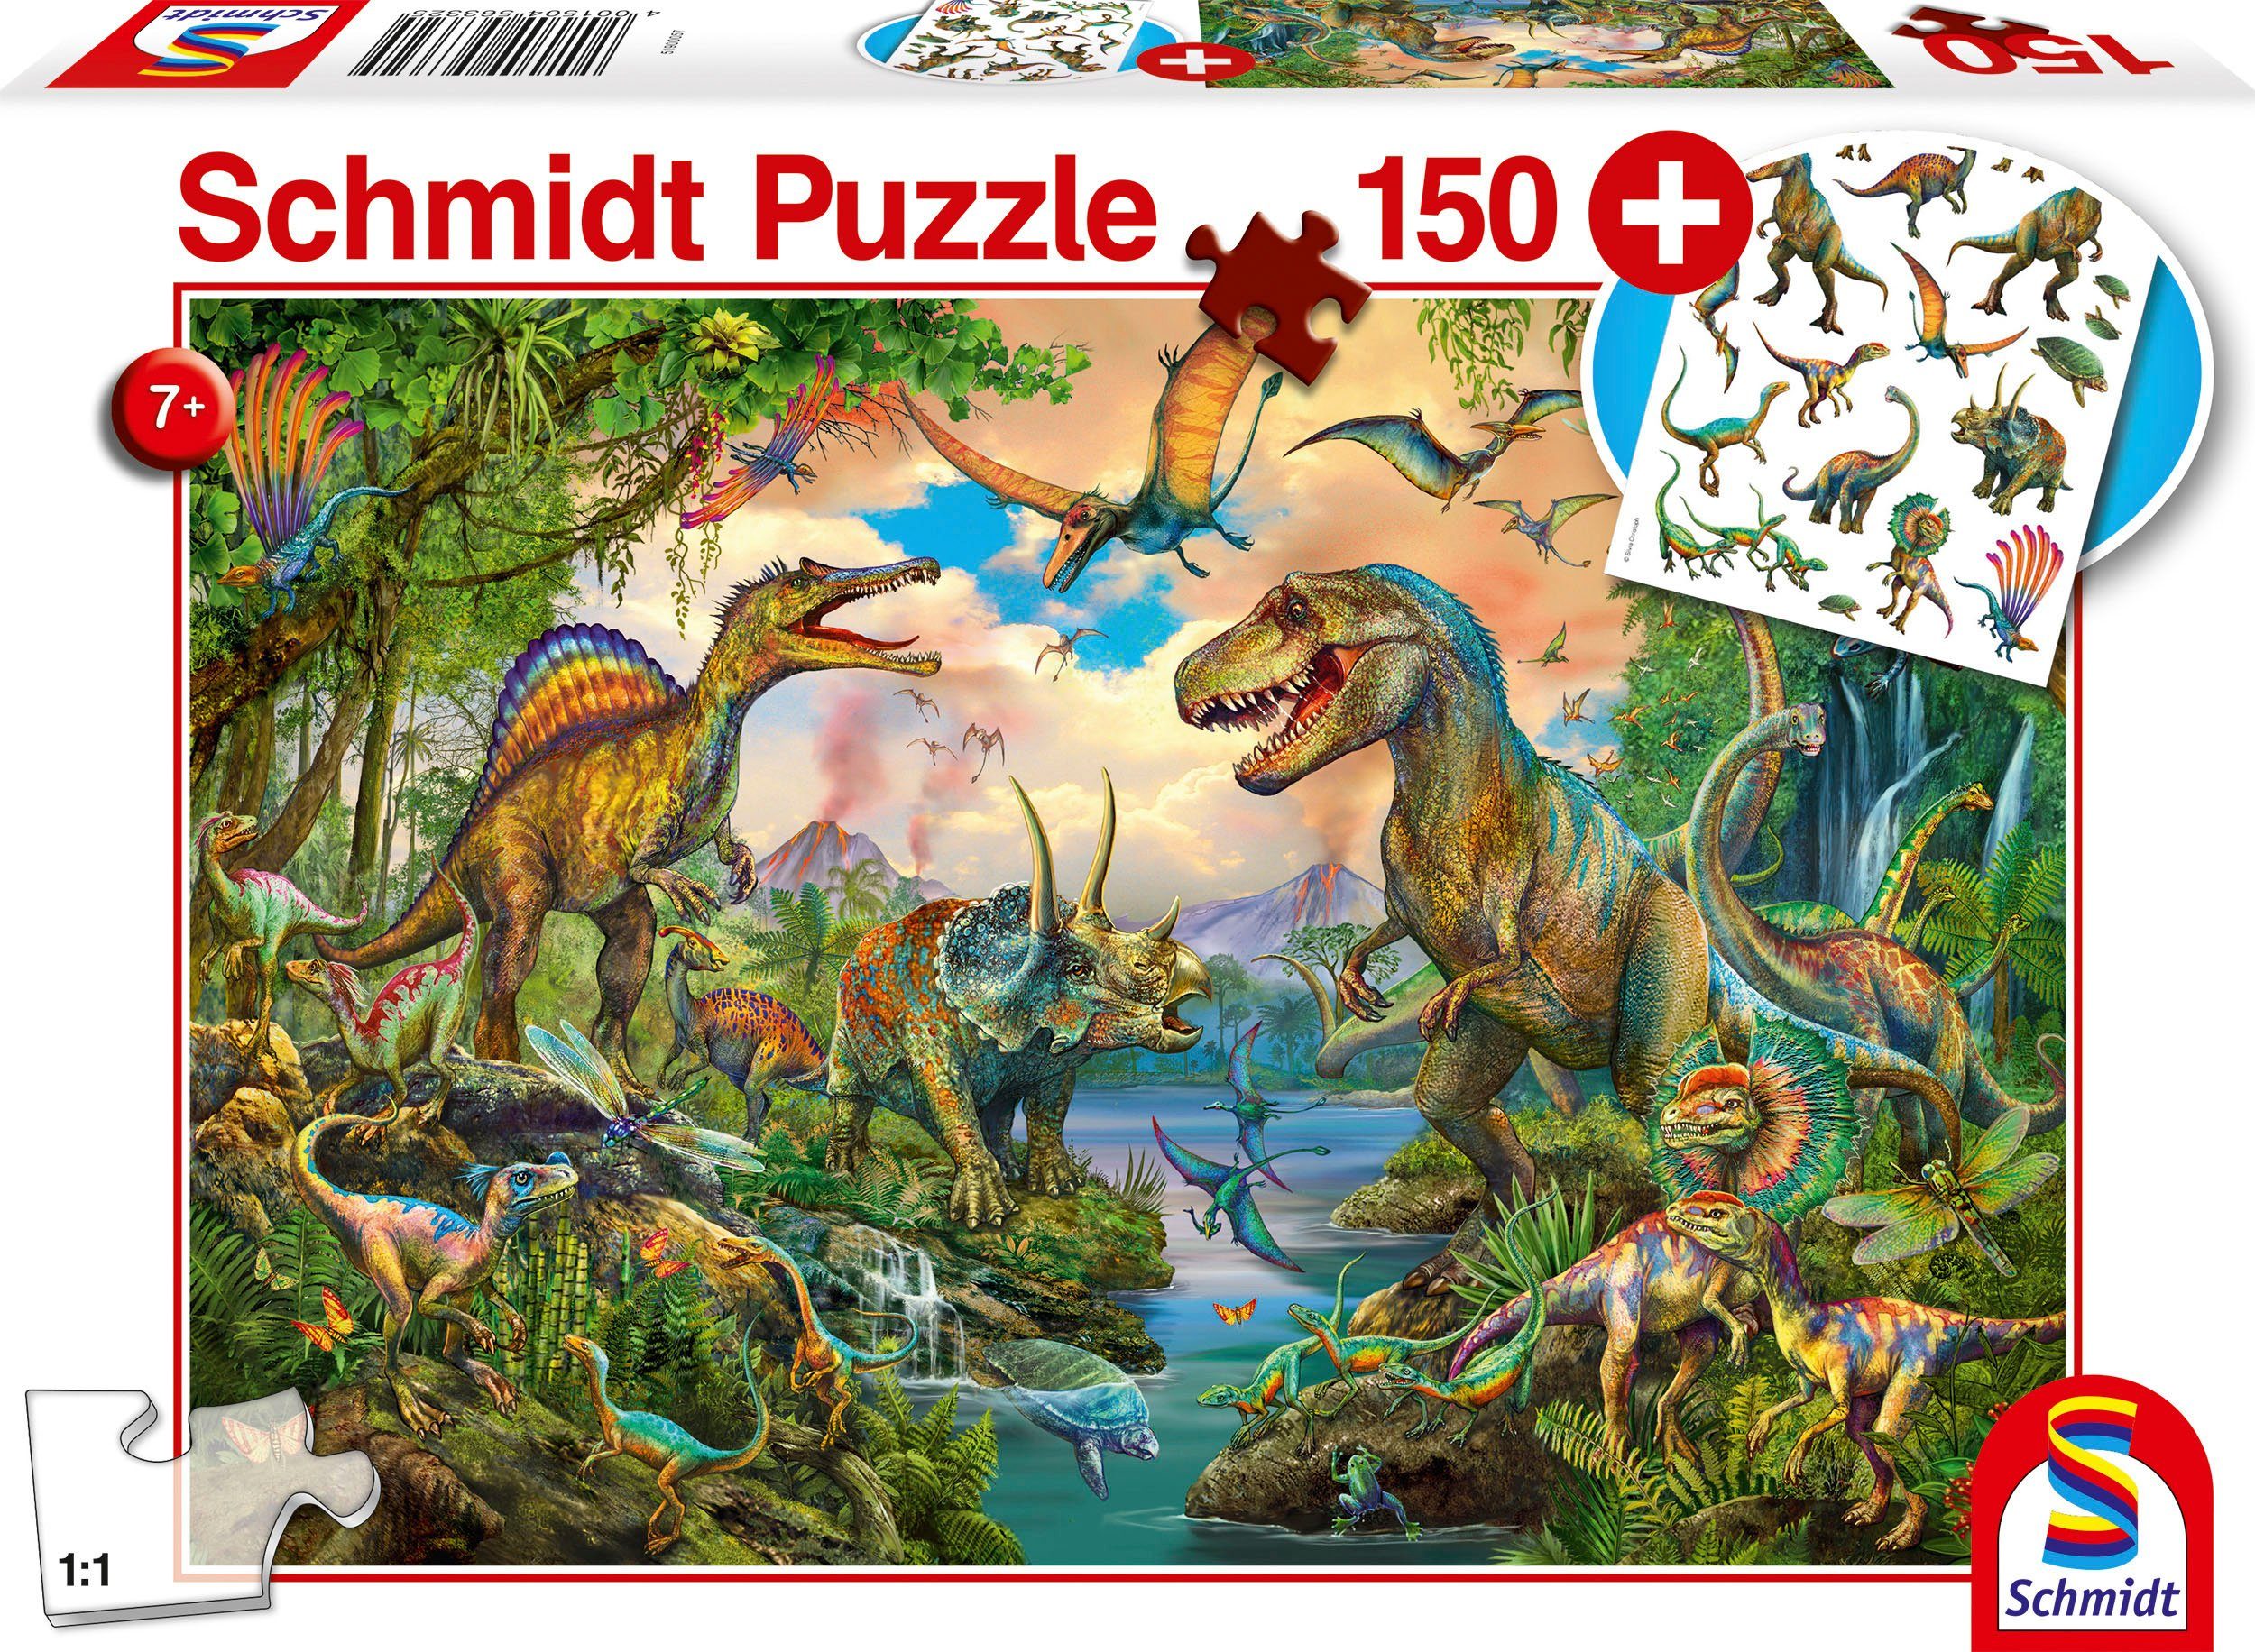 Schmidt Spiele Puzzle Wilde Add-on in mit Made Puzzleteile, Dinos, 150 Europe (Tattoos Dinosaurier)